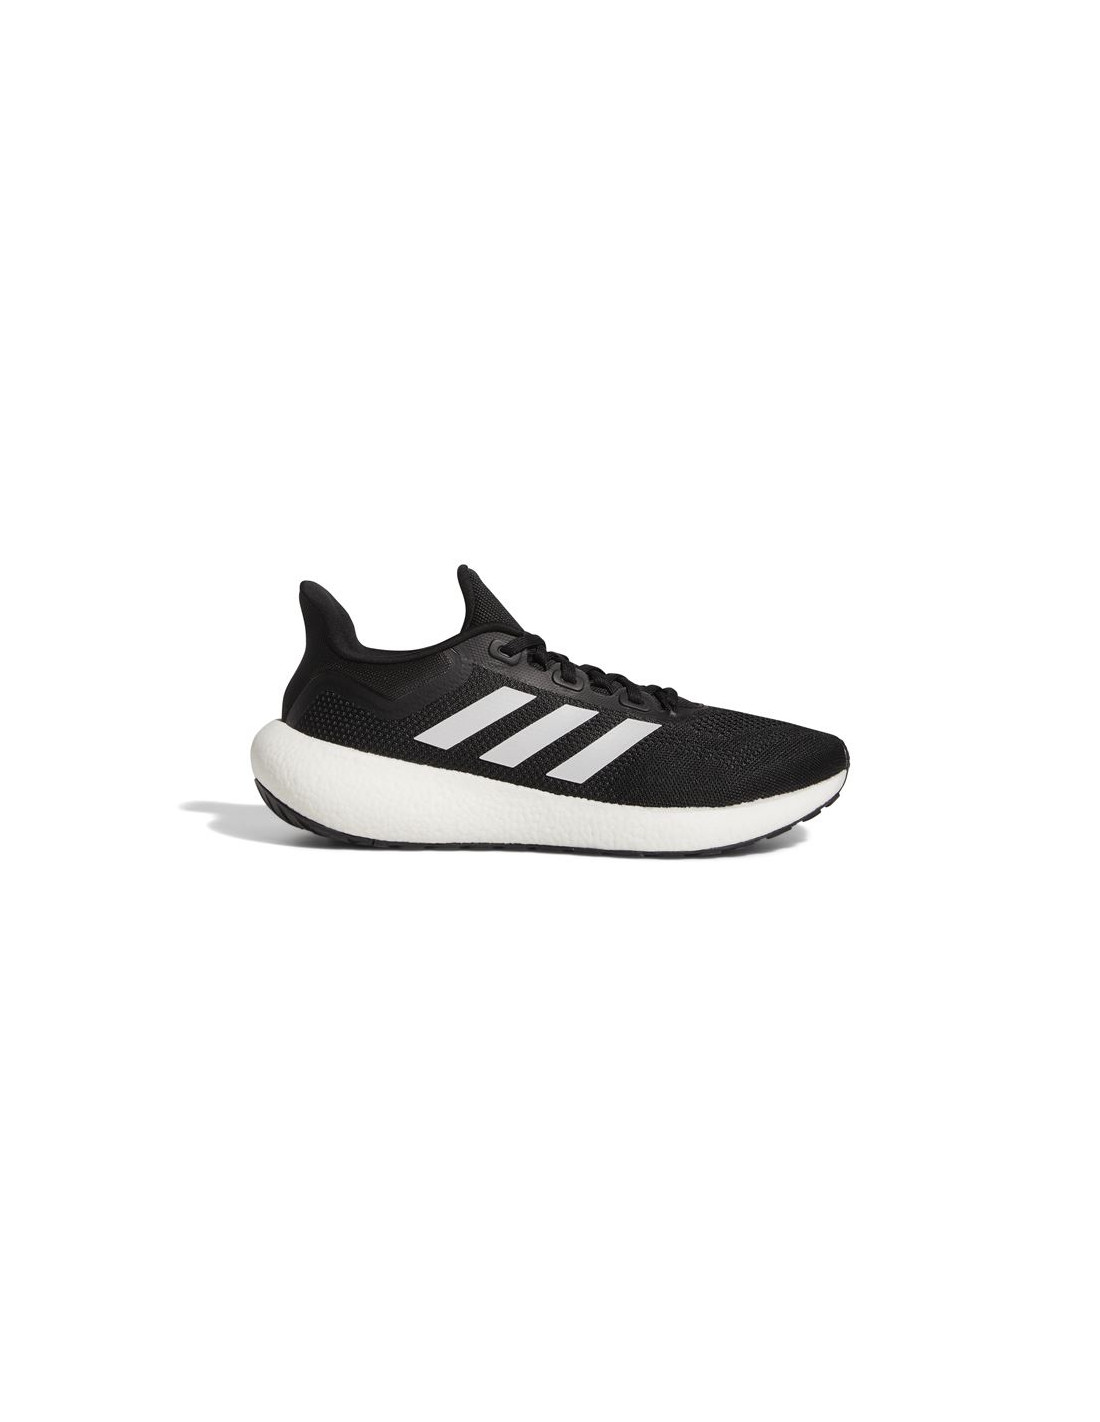 Adidas – Zapatillas para Hombre Negras – Pureboost 22 44 Negro